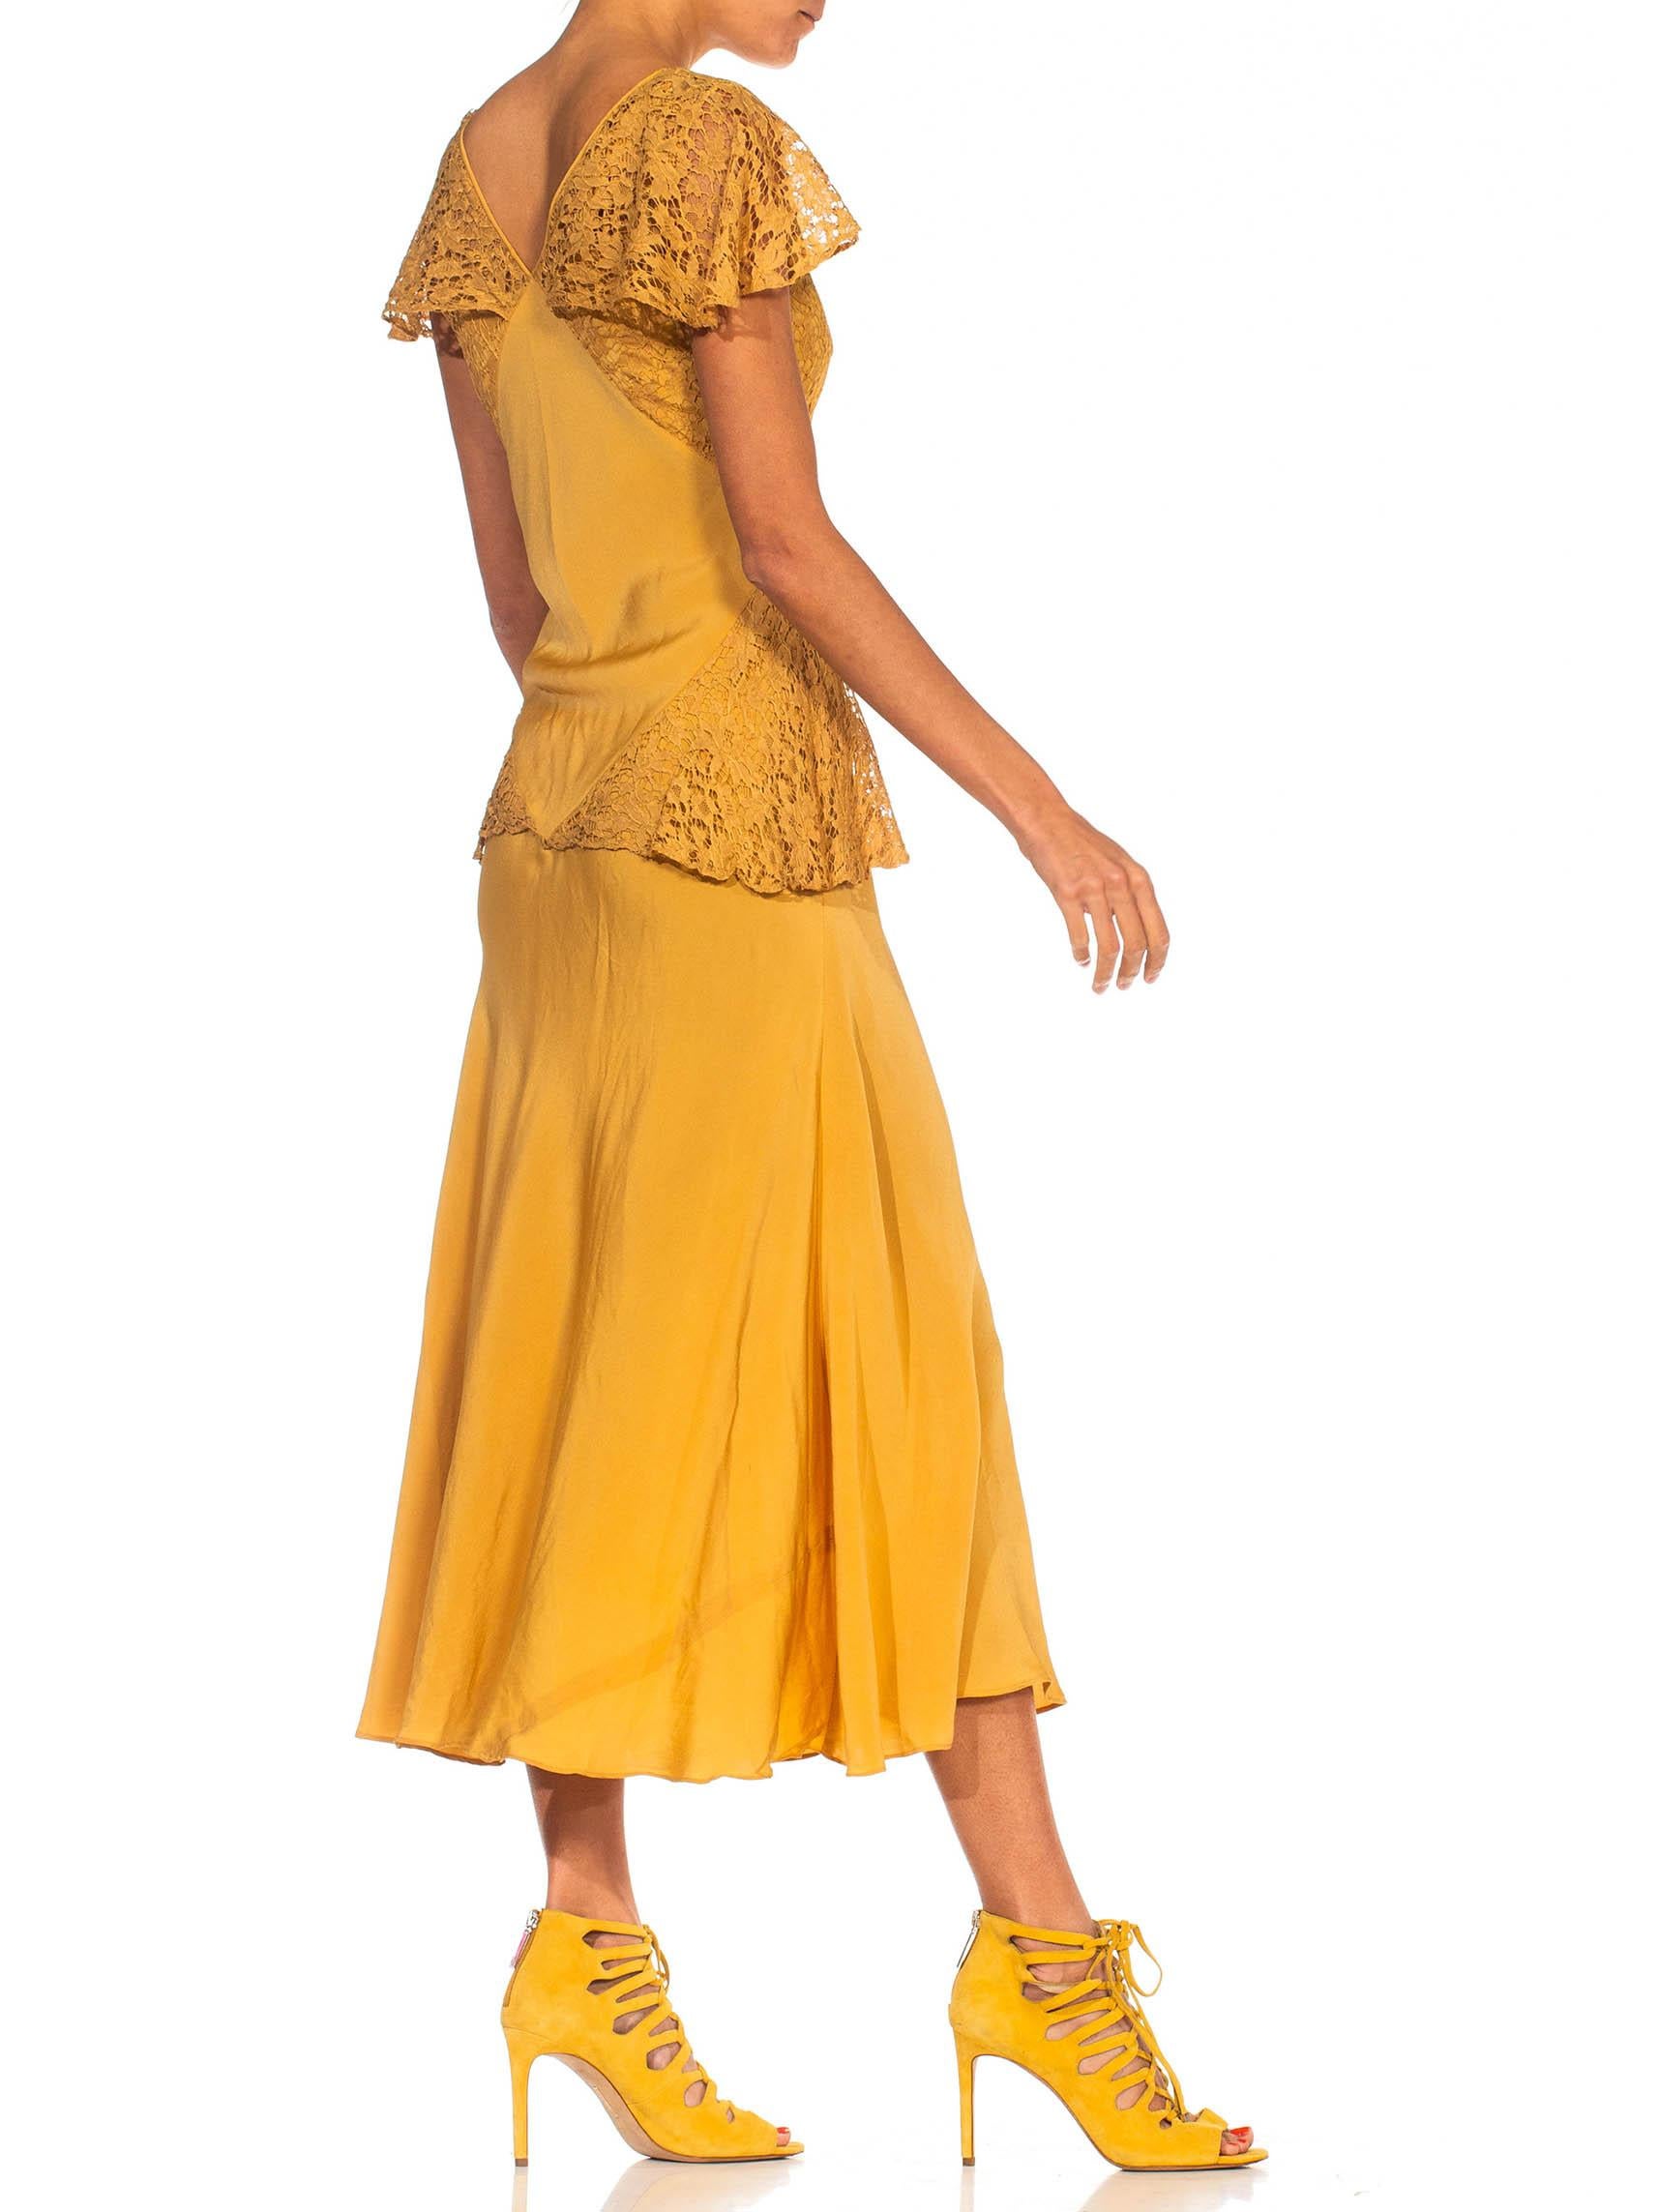 gold peplum dress